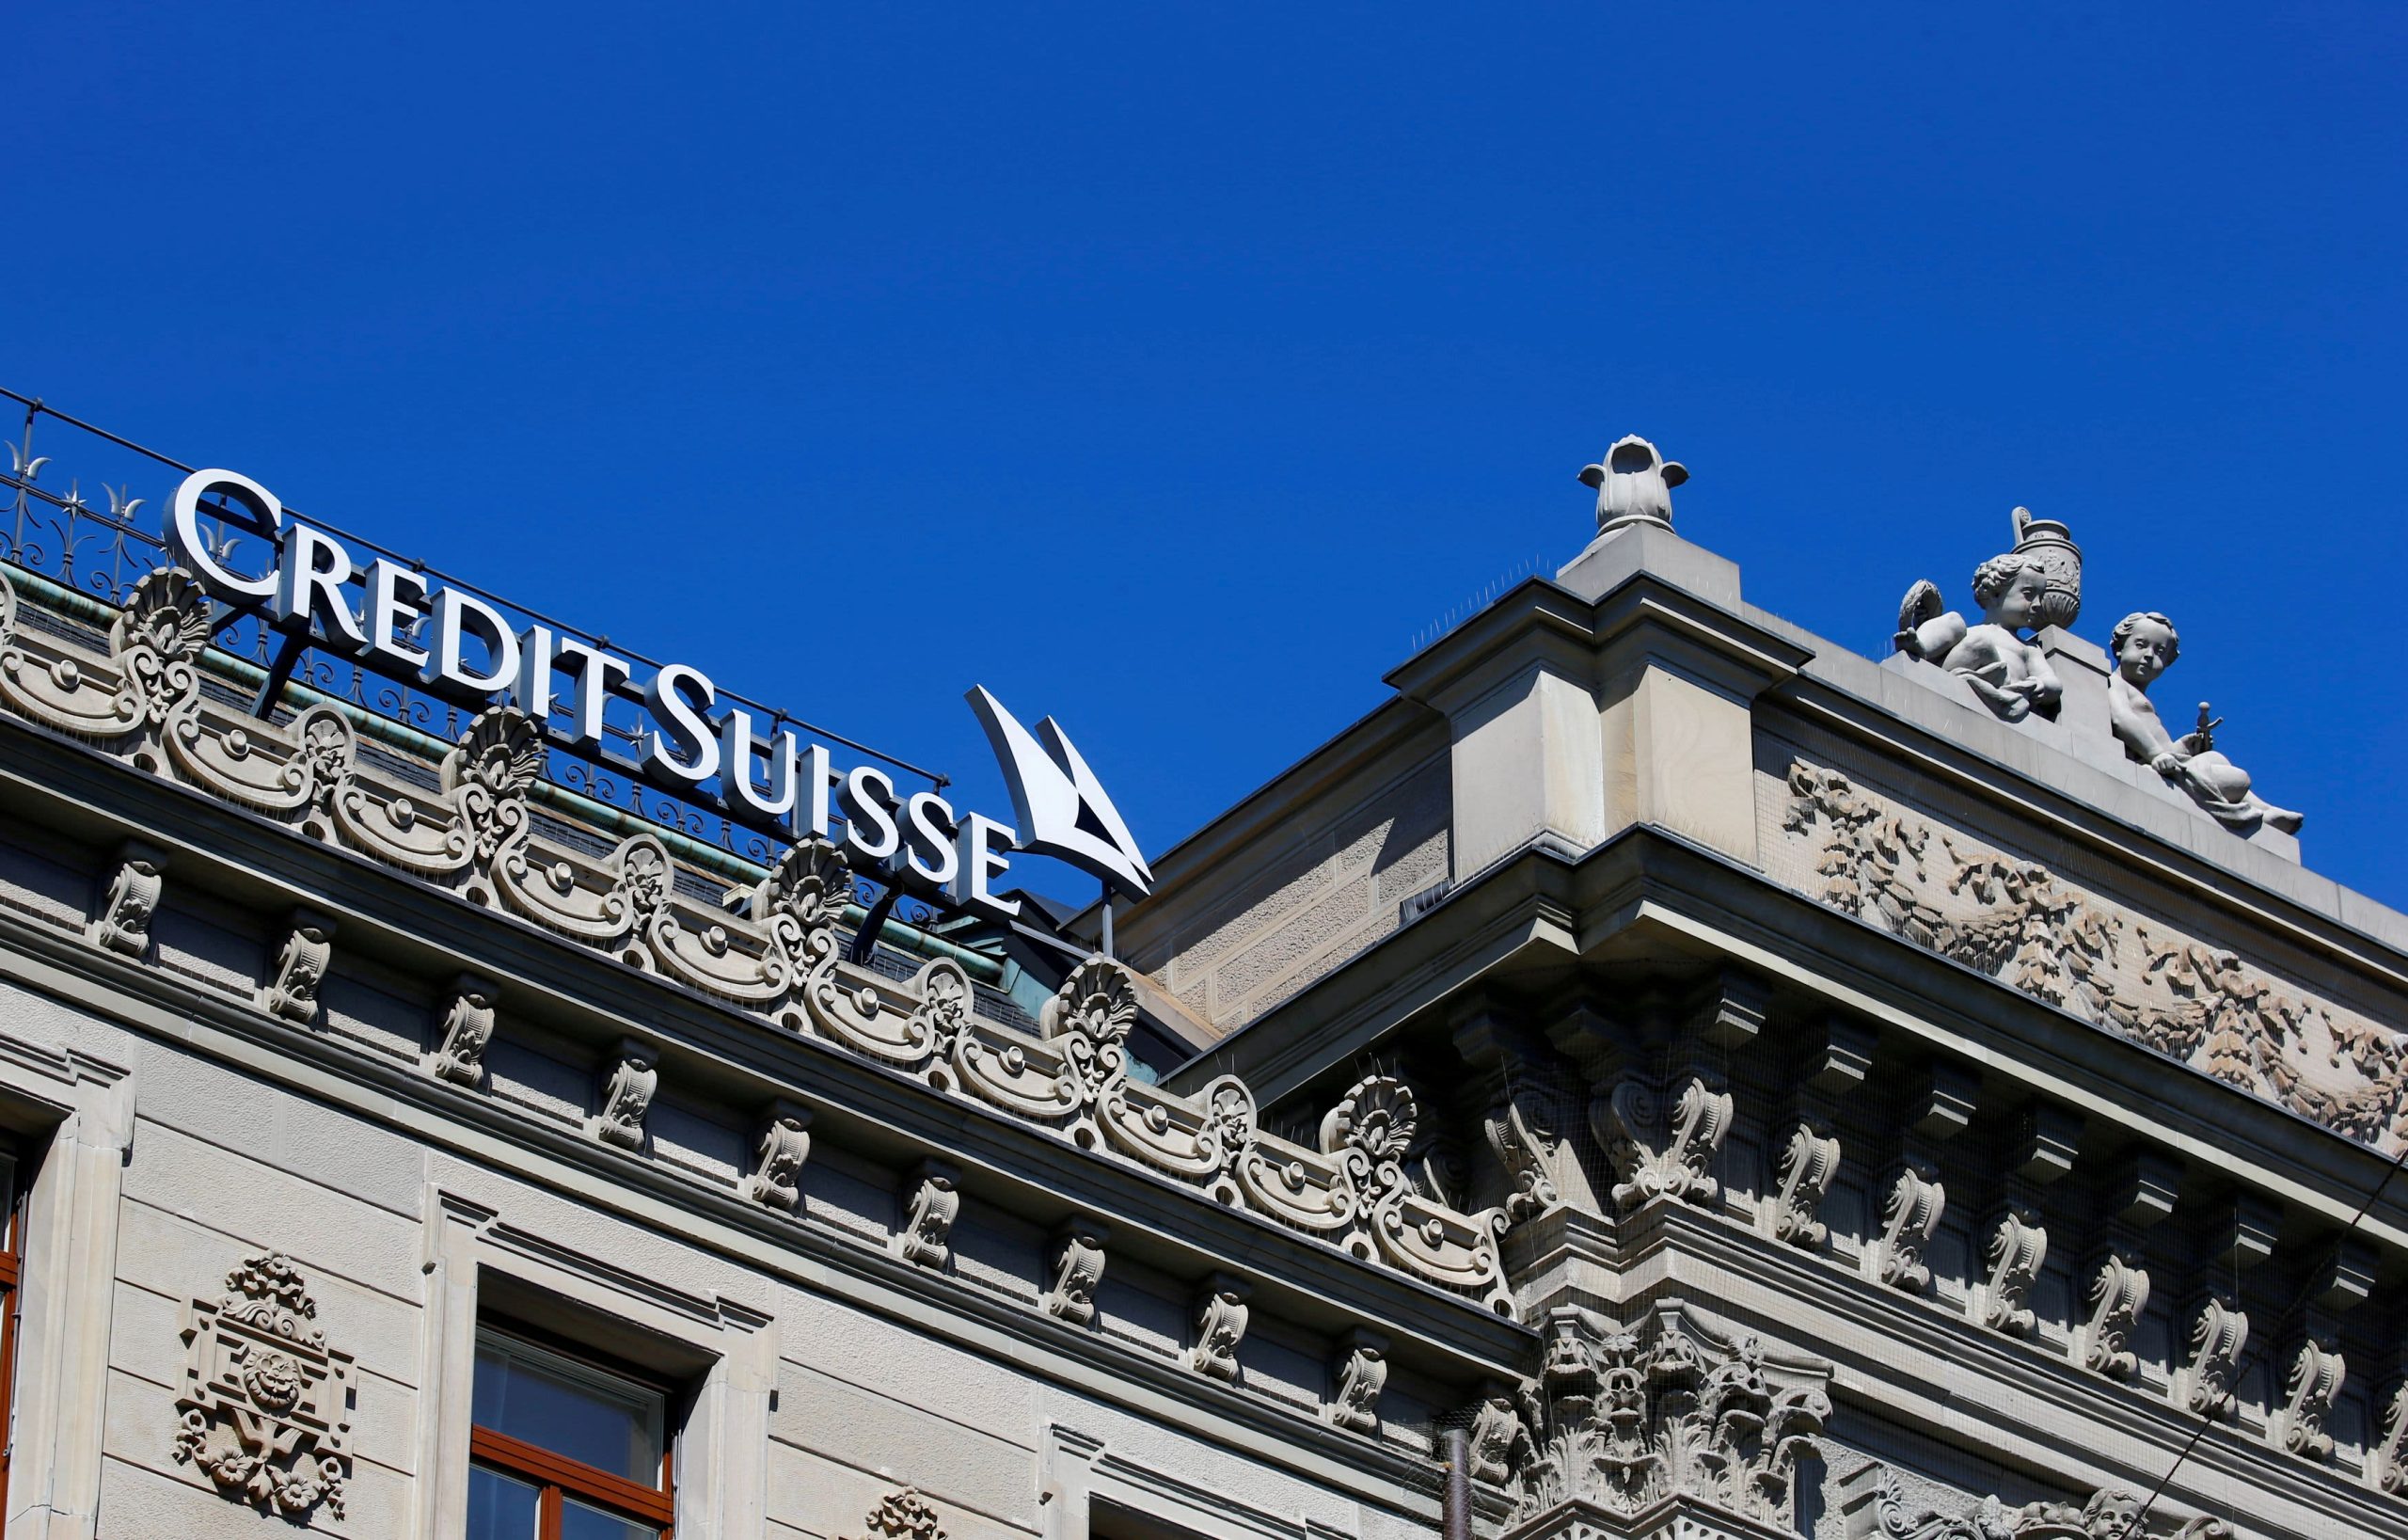 Credit Suisse necesita salvar la reputación después de que el presidente renuncie en el último escándalo, dicen los analistas